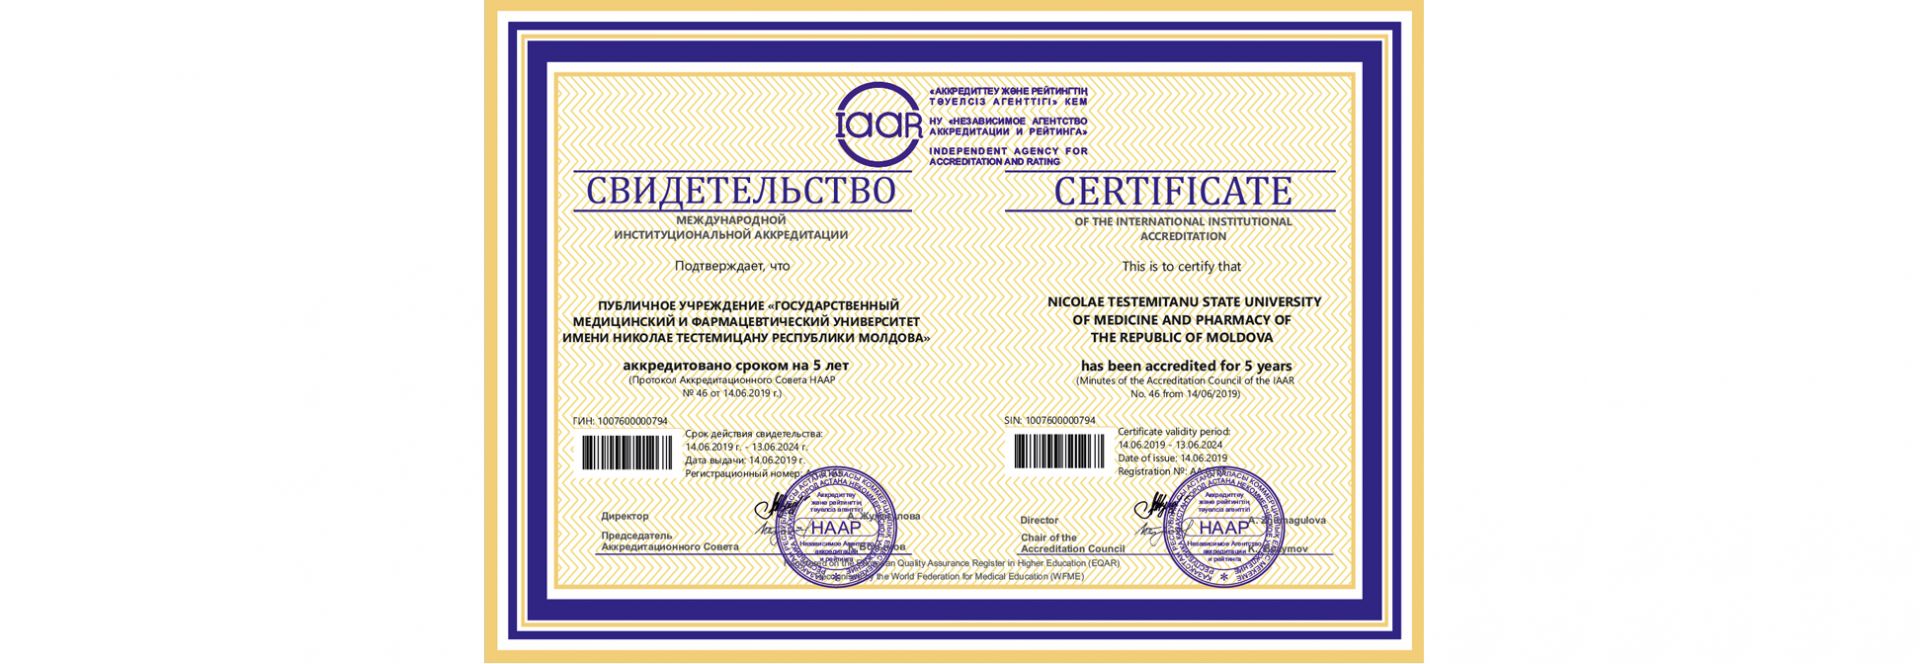 Certificat de acreditare internaţională